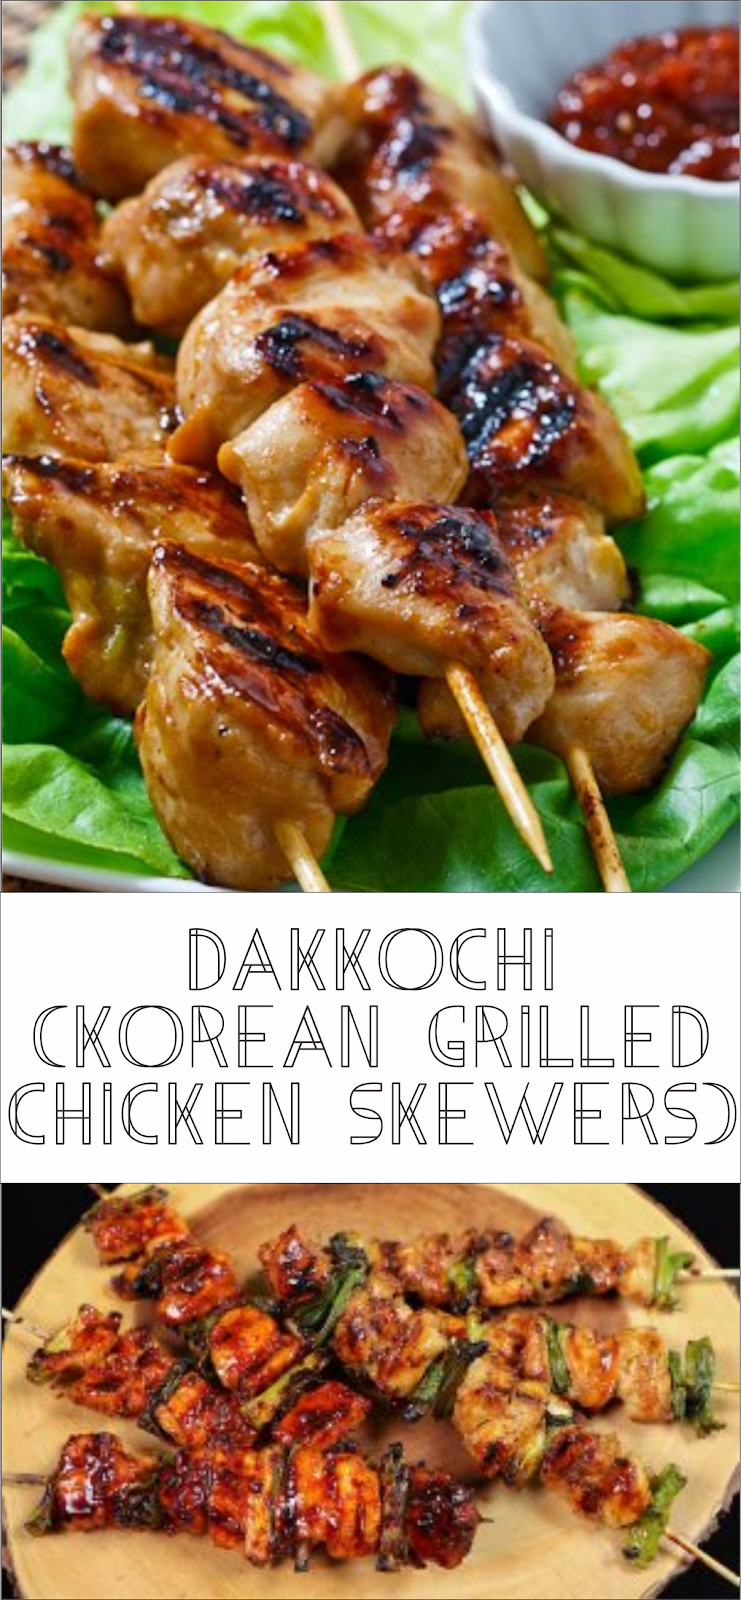 Dakkochi (Korean Grilled Chicken Skewers) | Floats CO